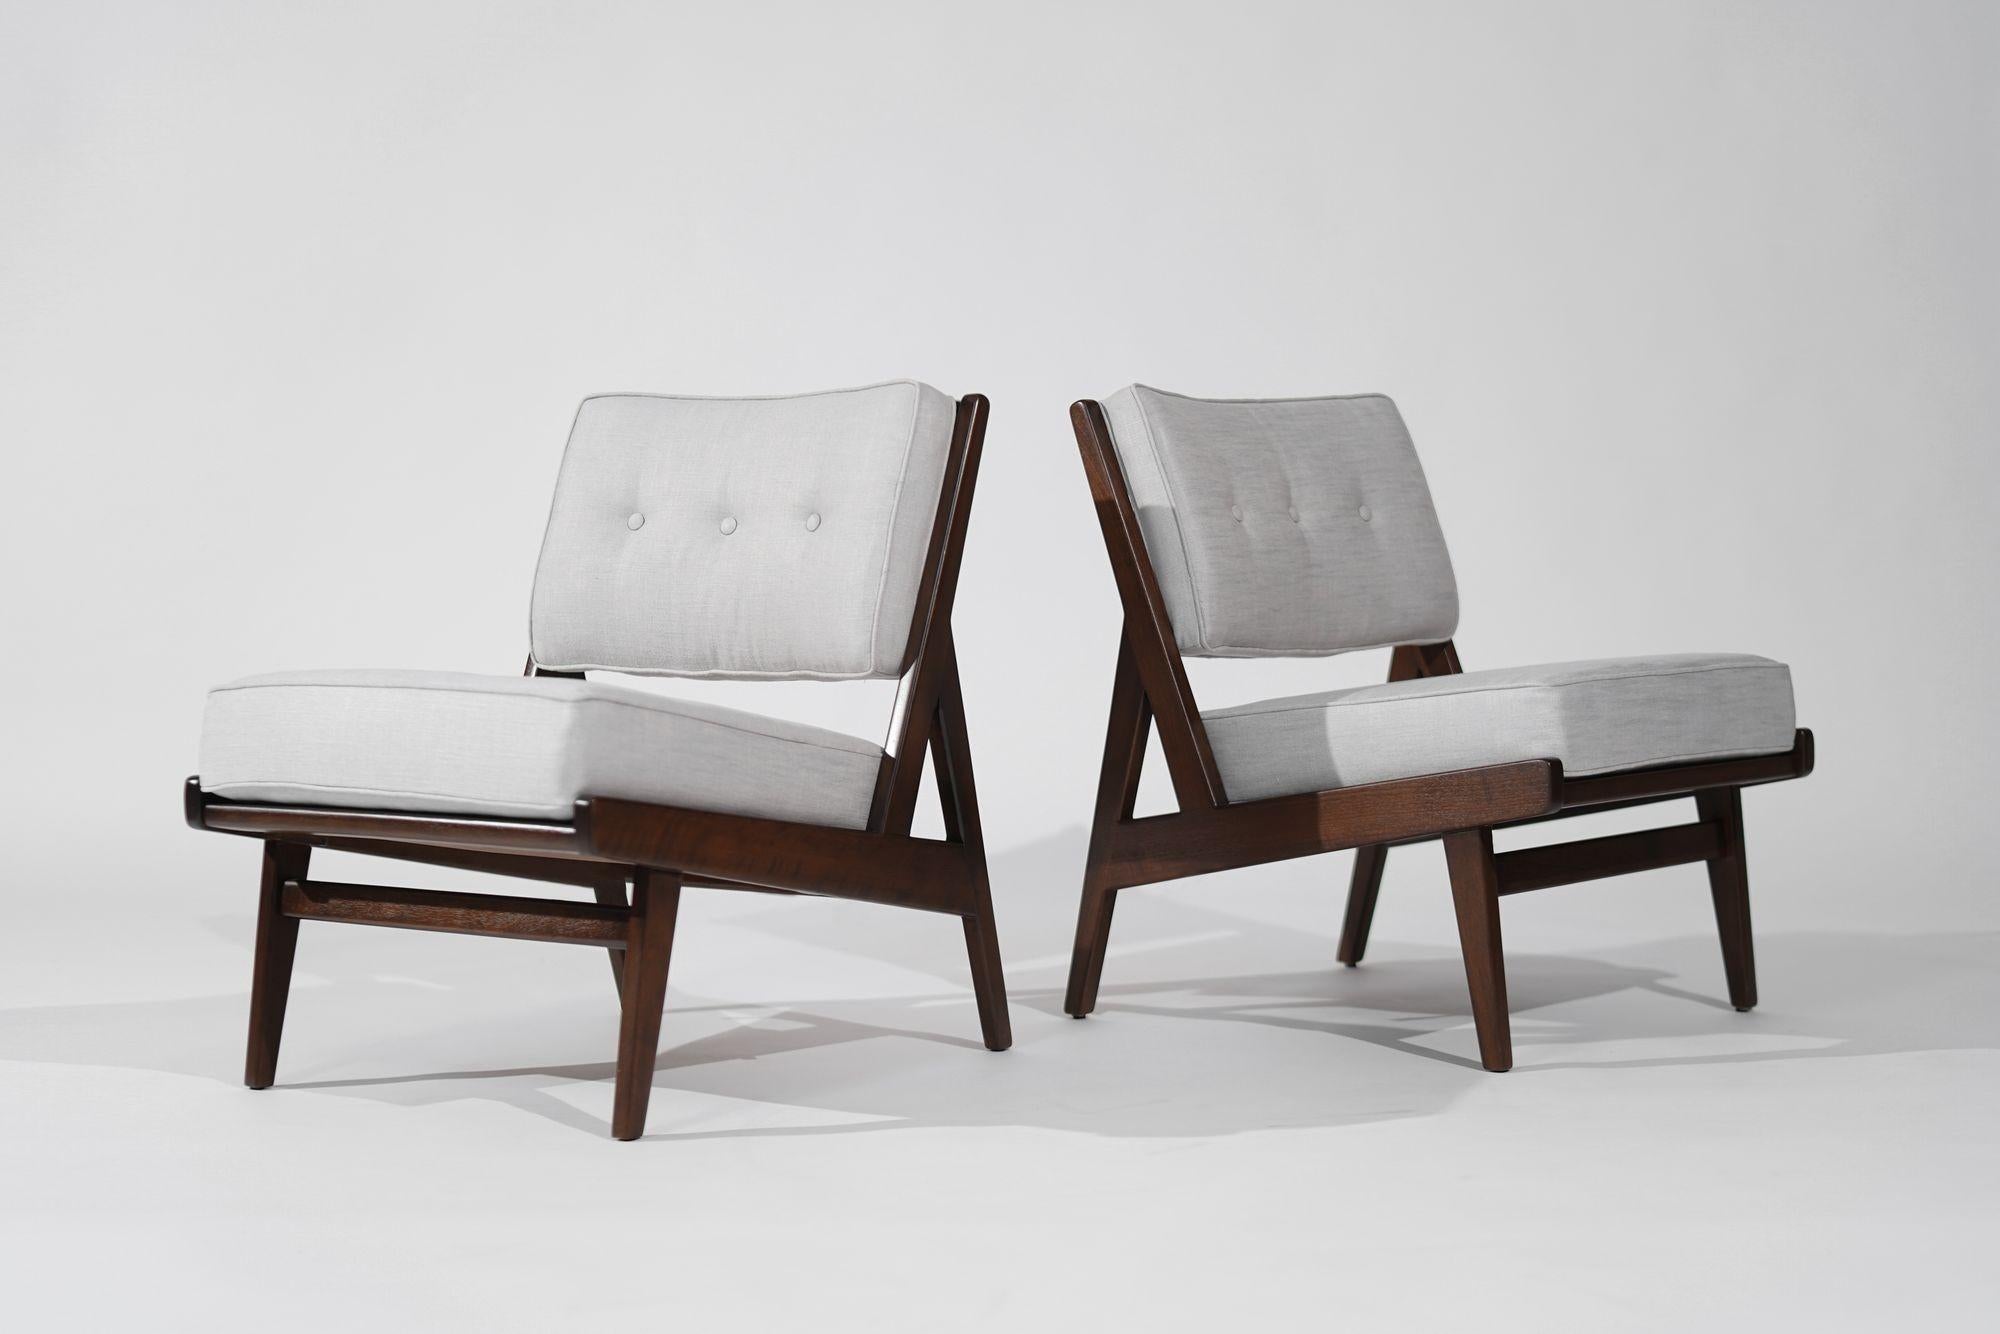 Seltene Sessel ohne Armlehne von Jens Risom für Risom, Inc., ca. 1950er Jahre (20. Jahrhundert) im Angebot